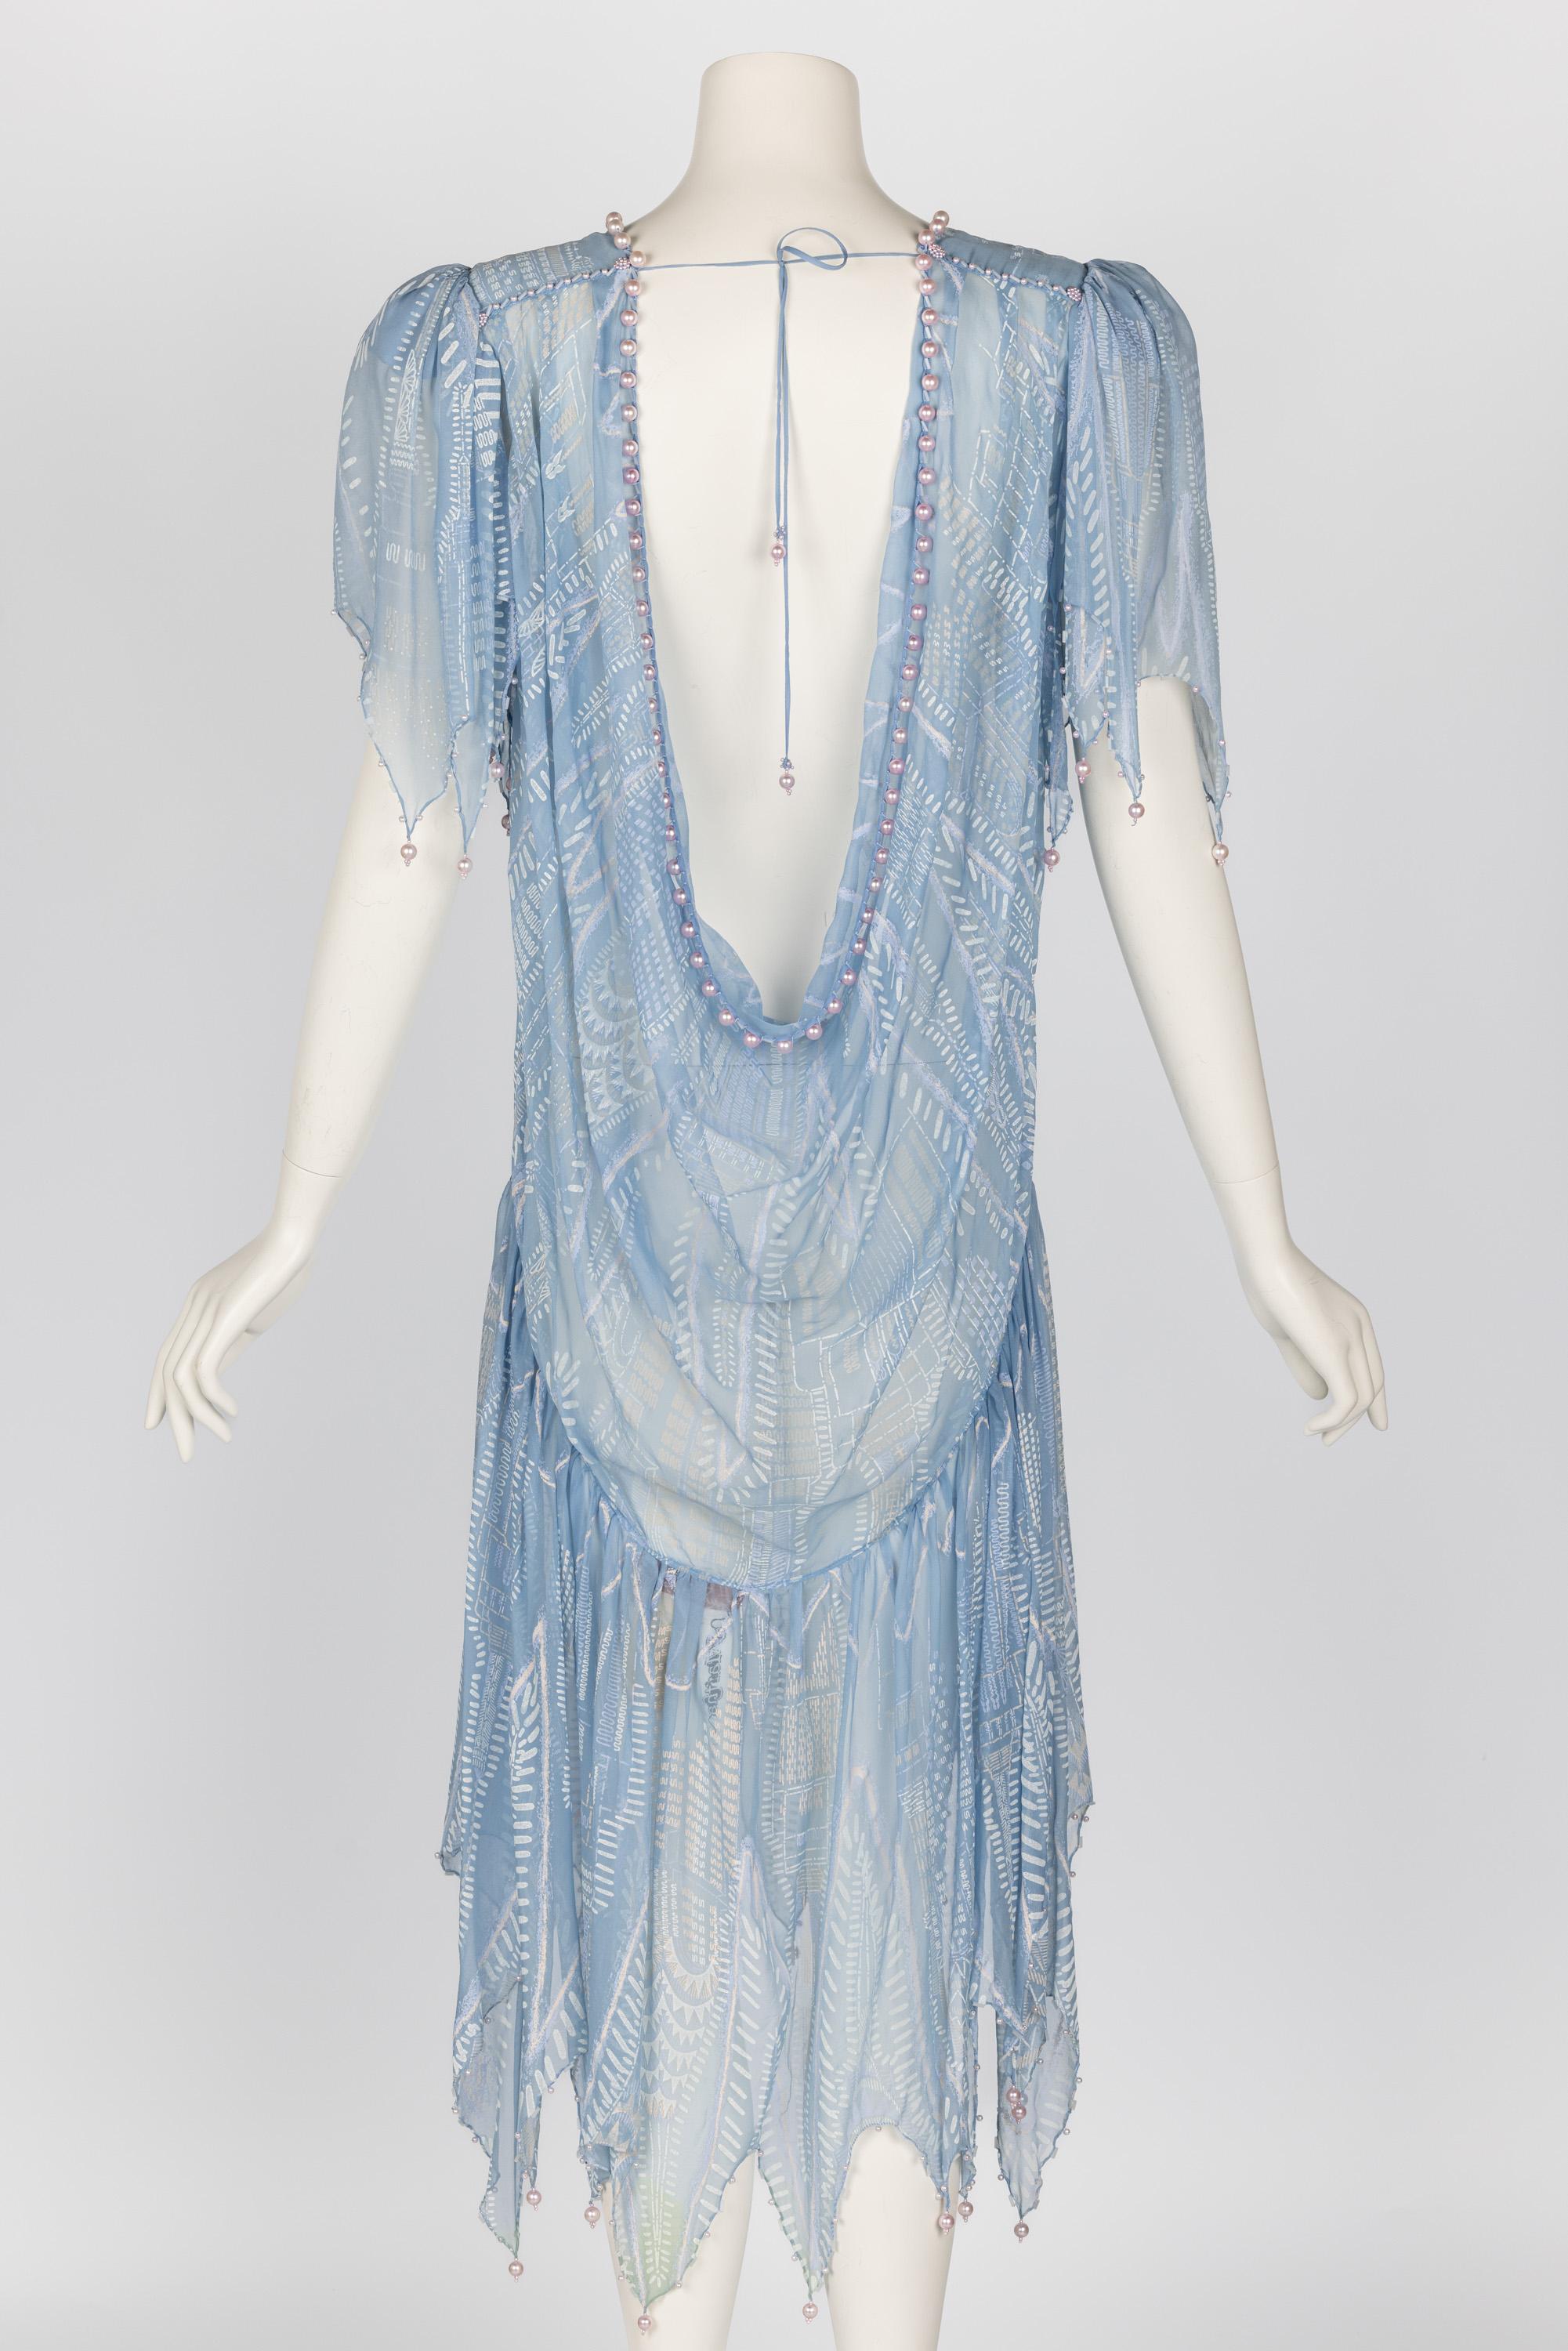 Zandra Rhodes Hellblaues, handbedrucktes, durchsichtiges, perlenbesetztes Seidenkleid mit Perlen, Museumsstück 1